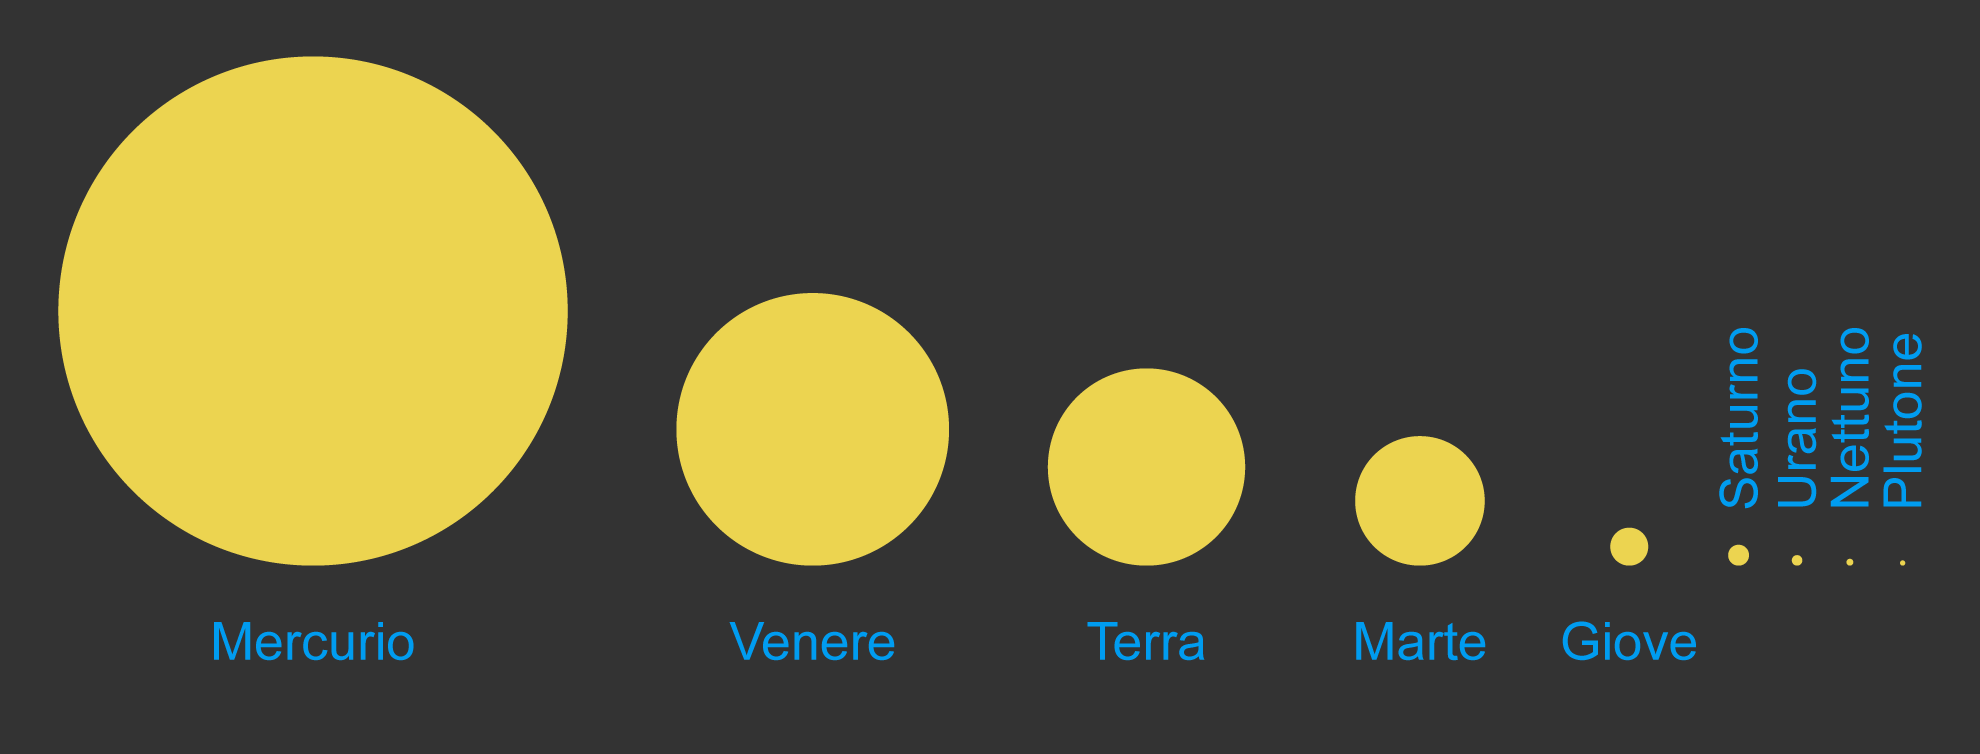 Confronto tra le dimensioni apparenti del Sole visto dai pianeti del Sistema Solare